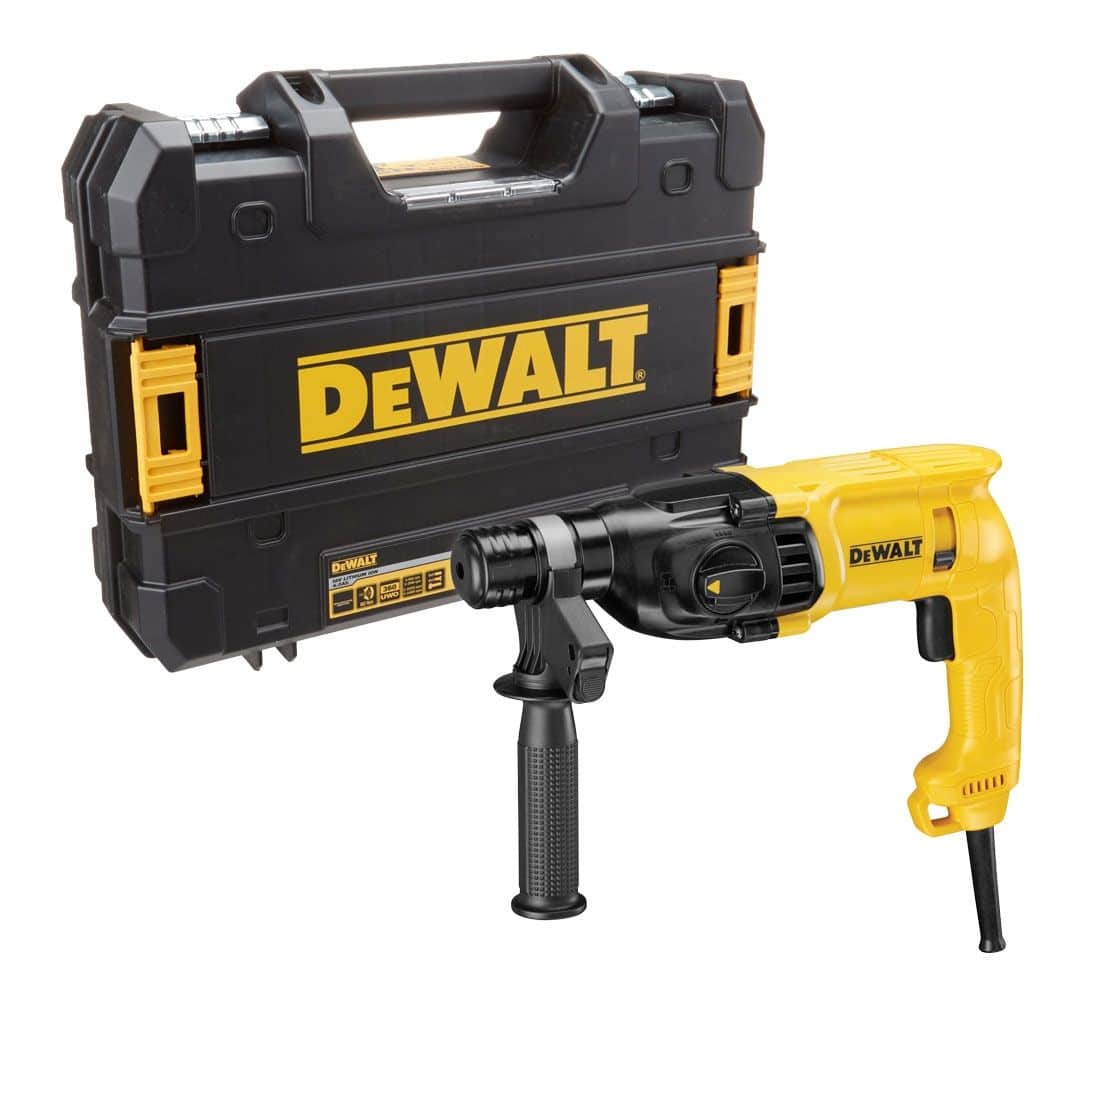 DEWALT D25033K 110V / 220V 22mm 3 Mode SDS Plus Hammer Drill